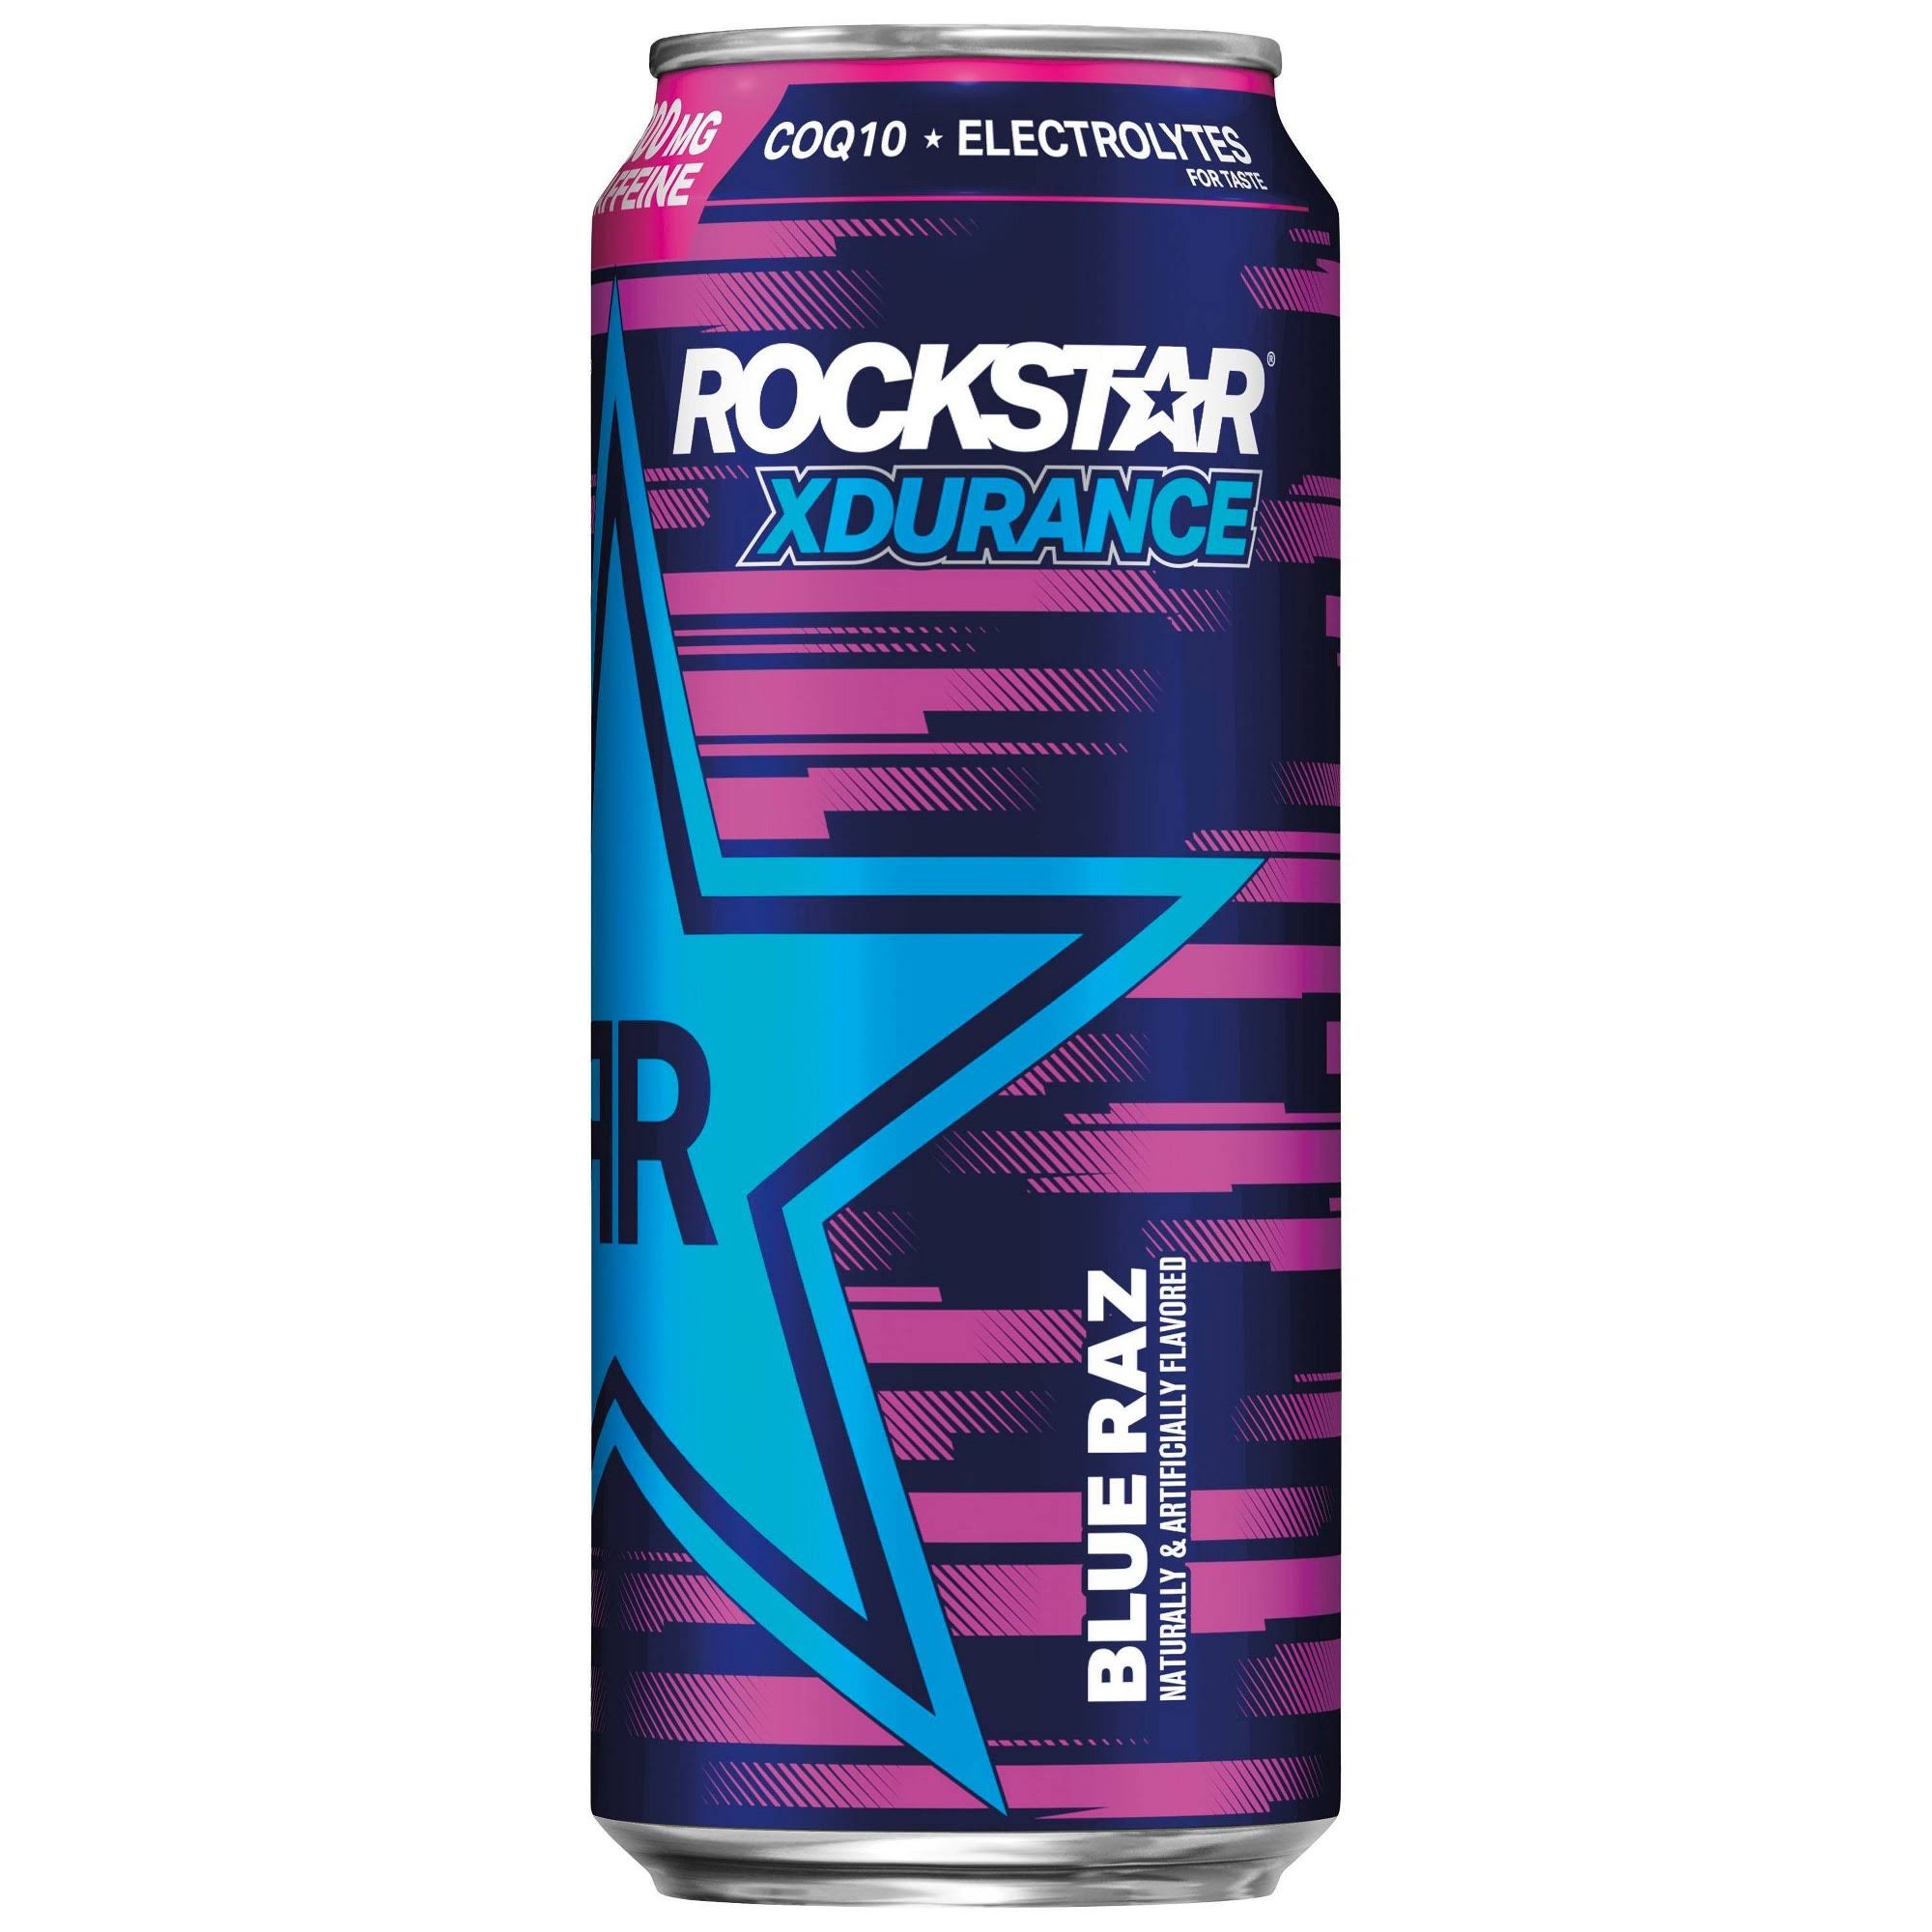 Rockstar Xdurance Energy Drink, Sugar Free, Blue Raz - 16 fl oz